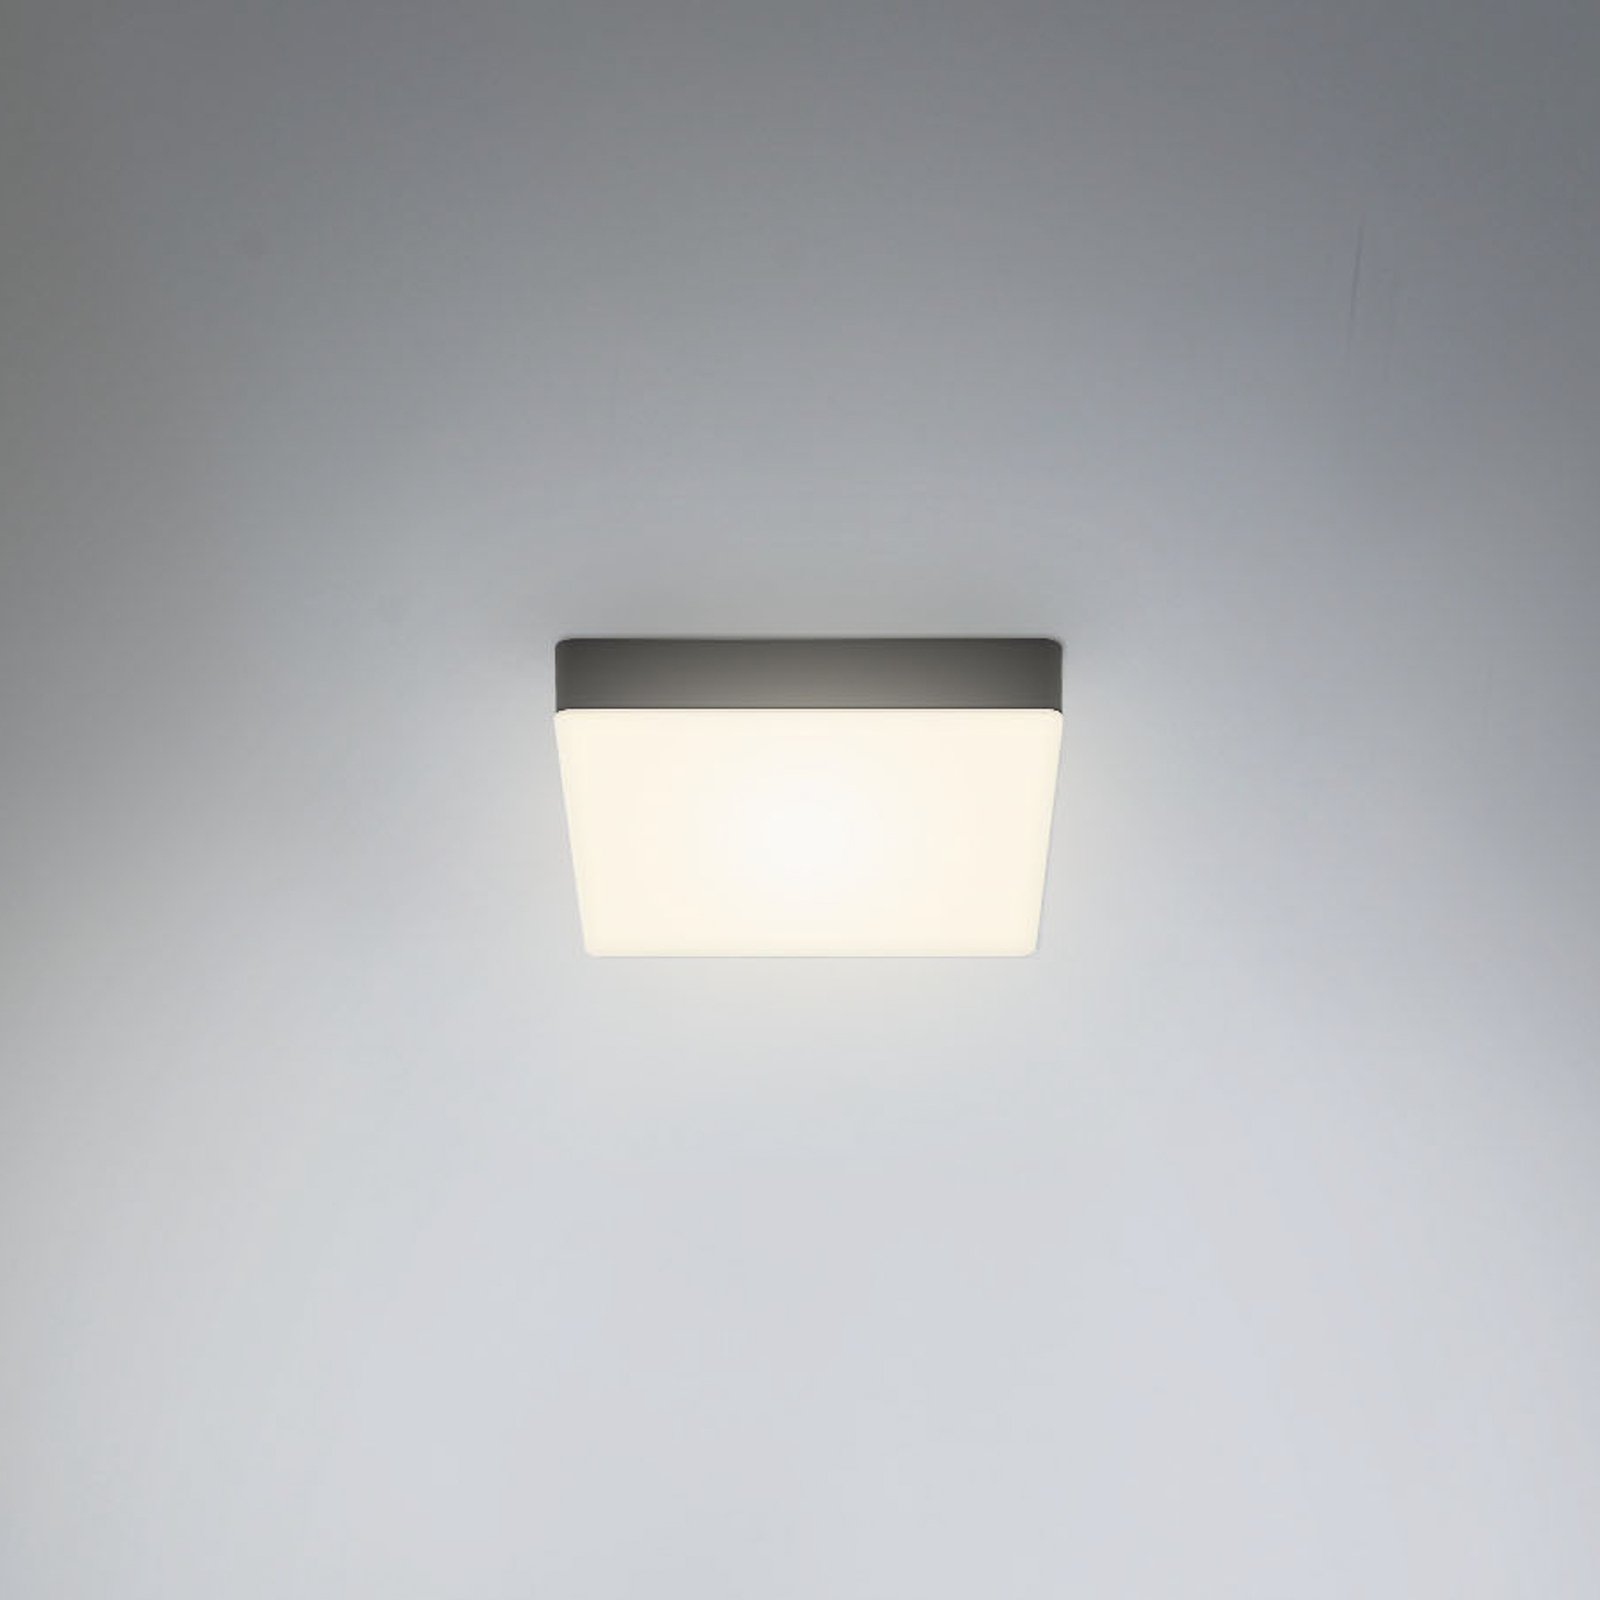 LED-Deckenleuchte Flame, 15,7 x 15,7 cm, schwarz